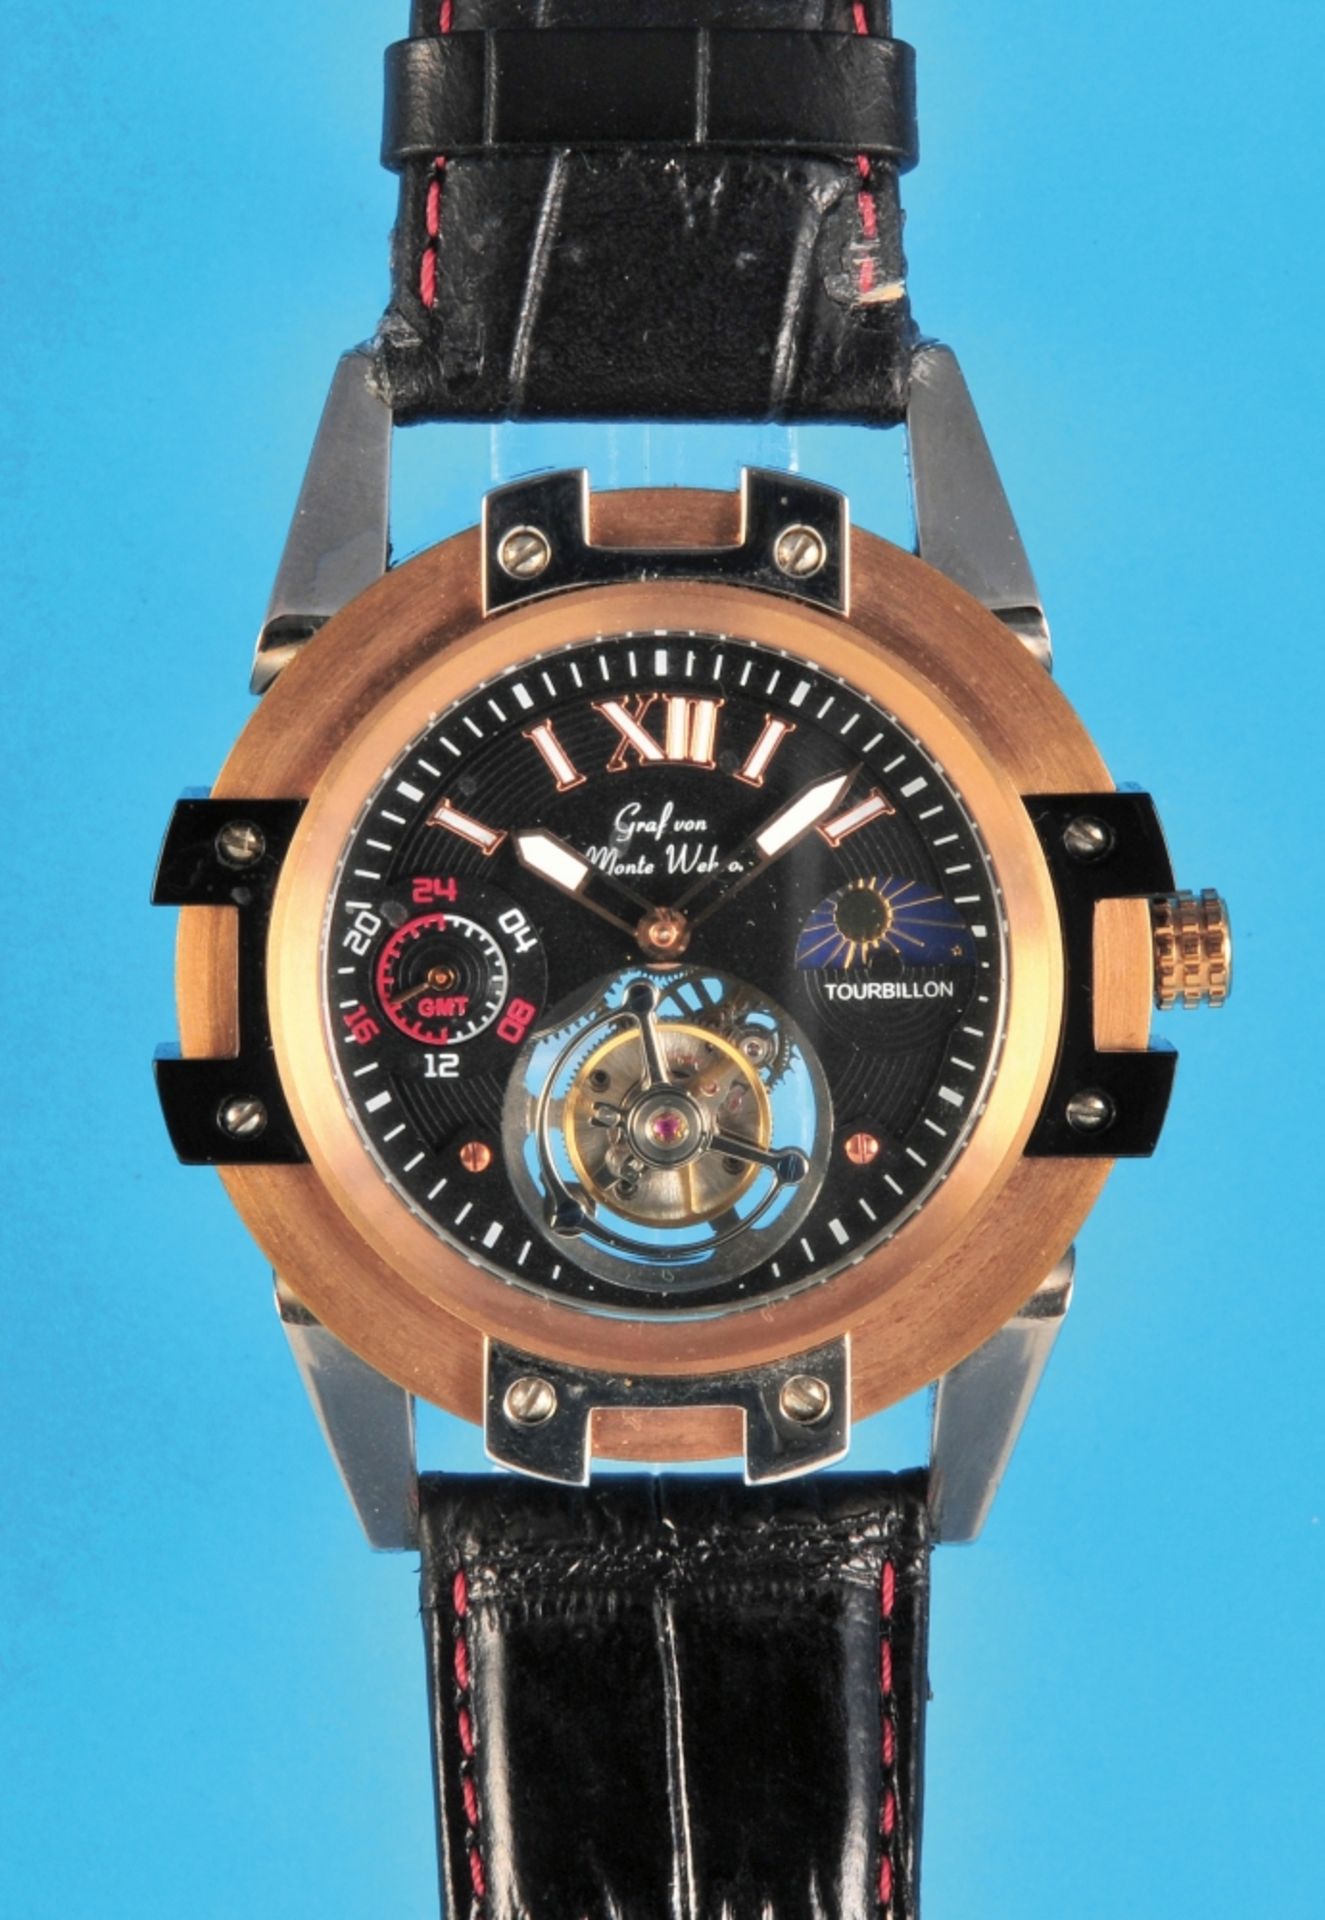 Large Graf von Monte Wehro "Toubillon" wristwatch with original case, 